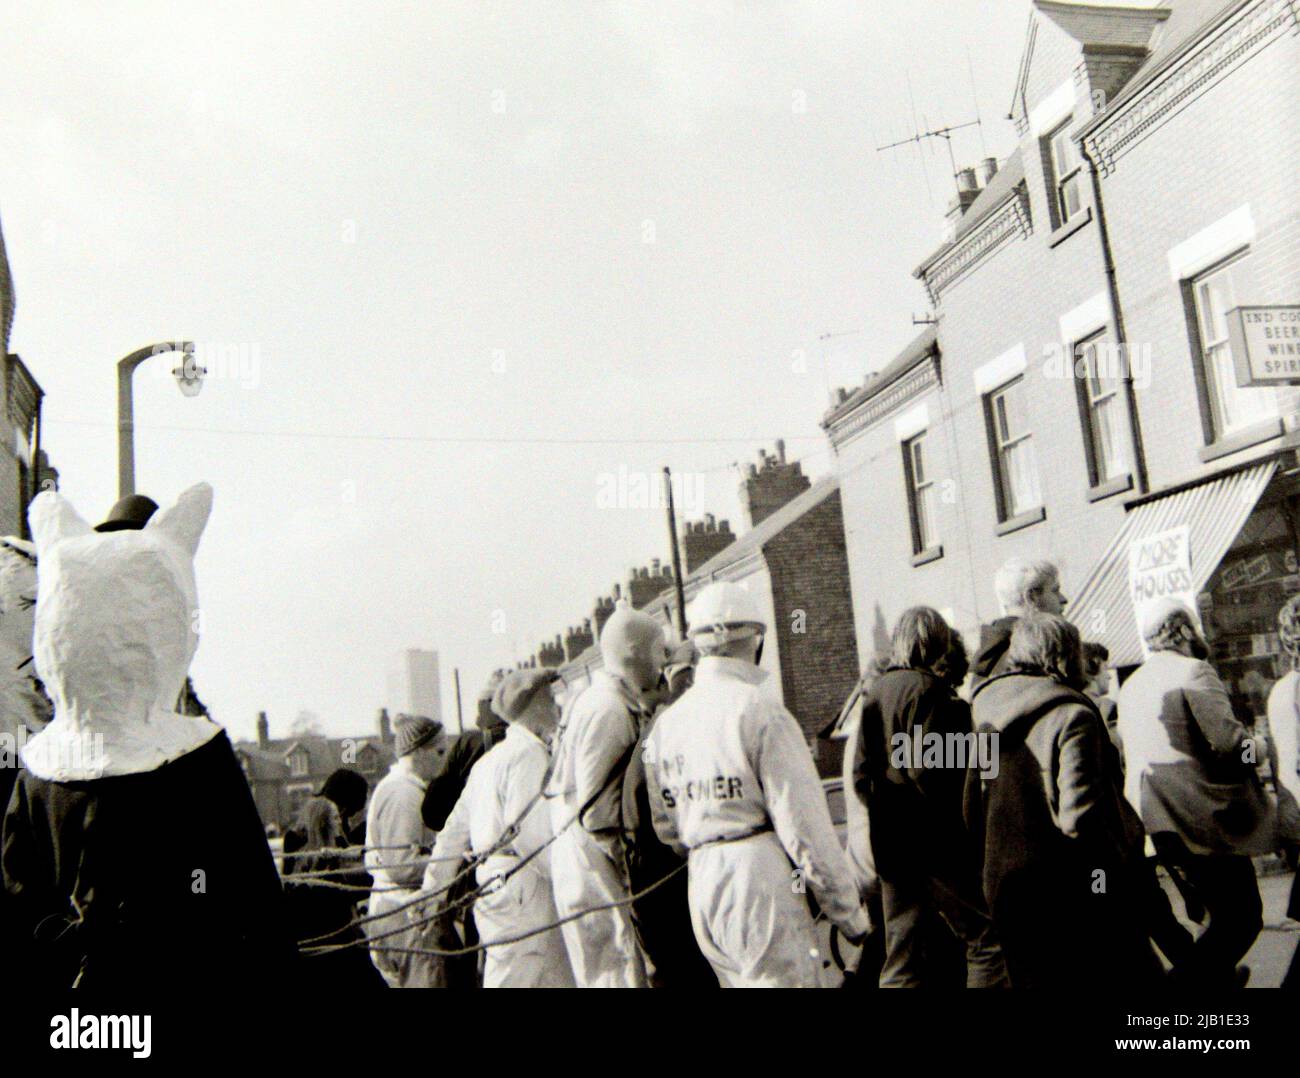 Demonstranten, darunter einige mit Masken oder Kopfmasken, nehmen 1972 an einer Anti-Rassismus-Demonstration in Leicester, England, Großbritannien und den Britischen Inseln Teil. Maskierte und behelmte Demonstranten sind mit Seilen verbunden, um andere Demonstranten in Kopfmasken zu führen. Stockfoto